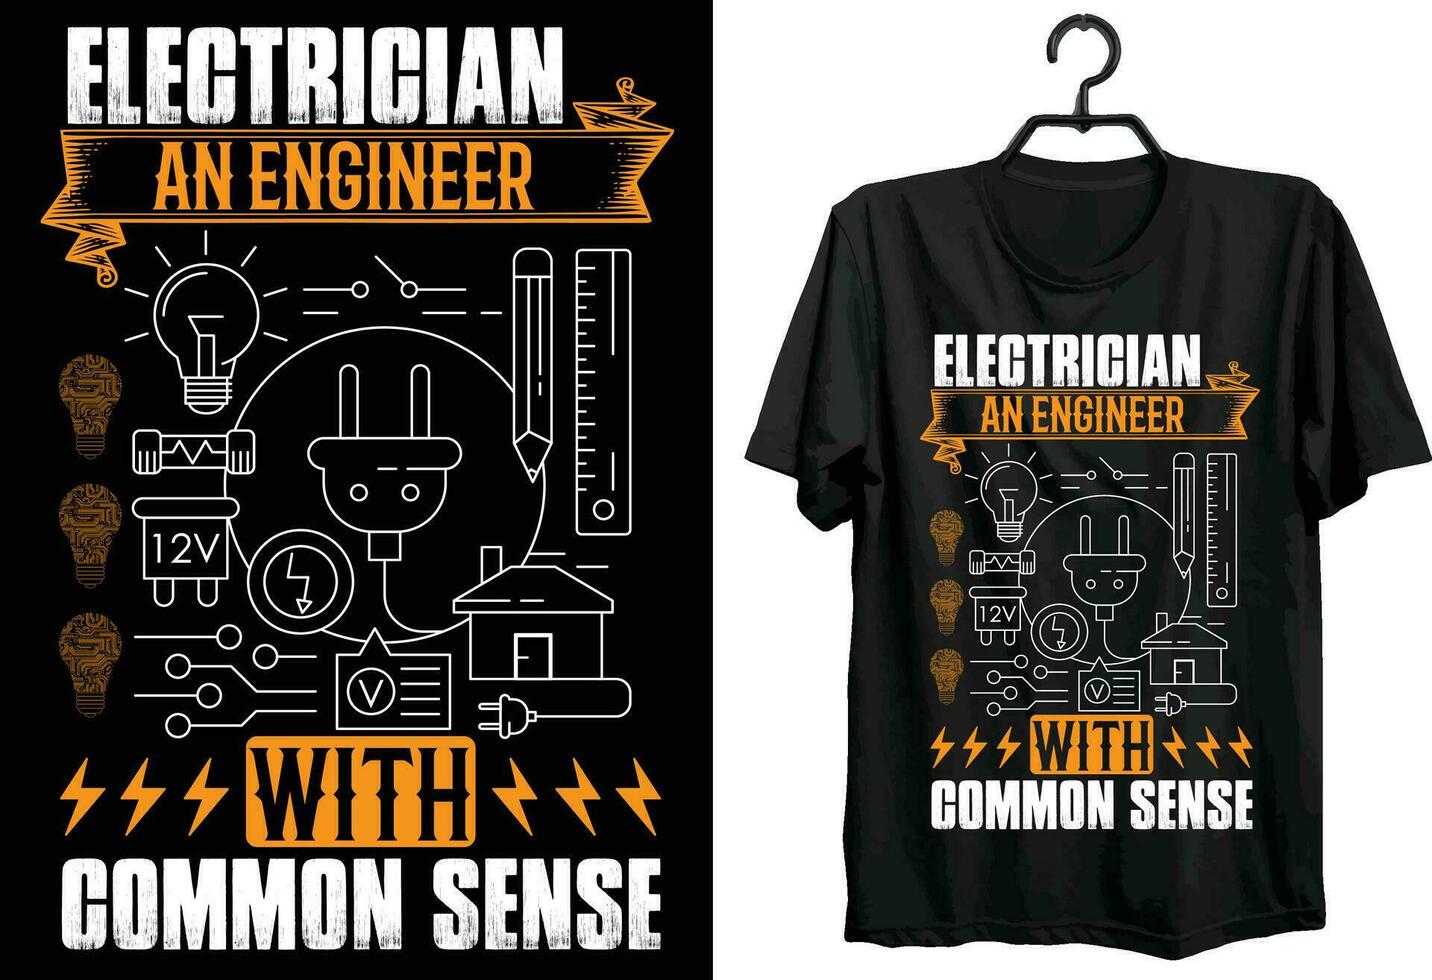 elettricista un ingegnere con Comune senso. elettrico ingegneria maglietta design. divertente regalo articolo elettrico ingegneria maglietta design per elettrico ingegneri. vettore